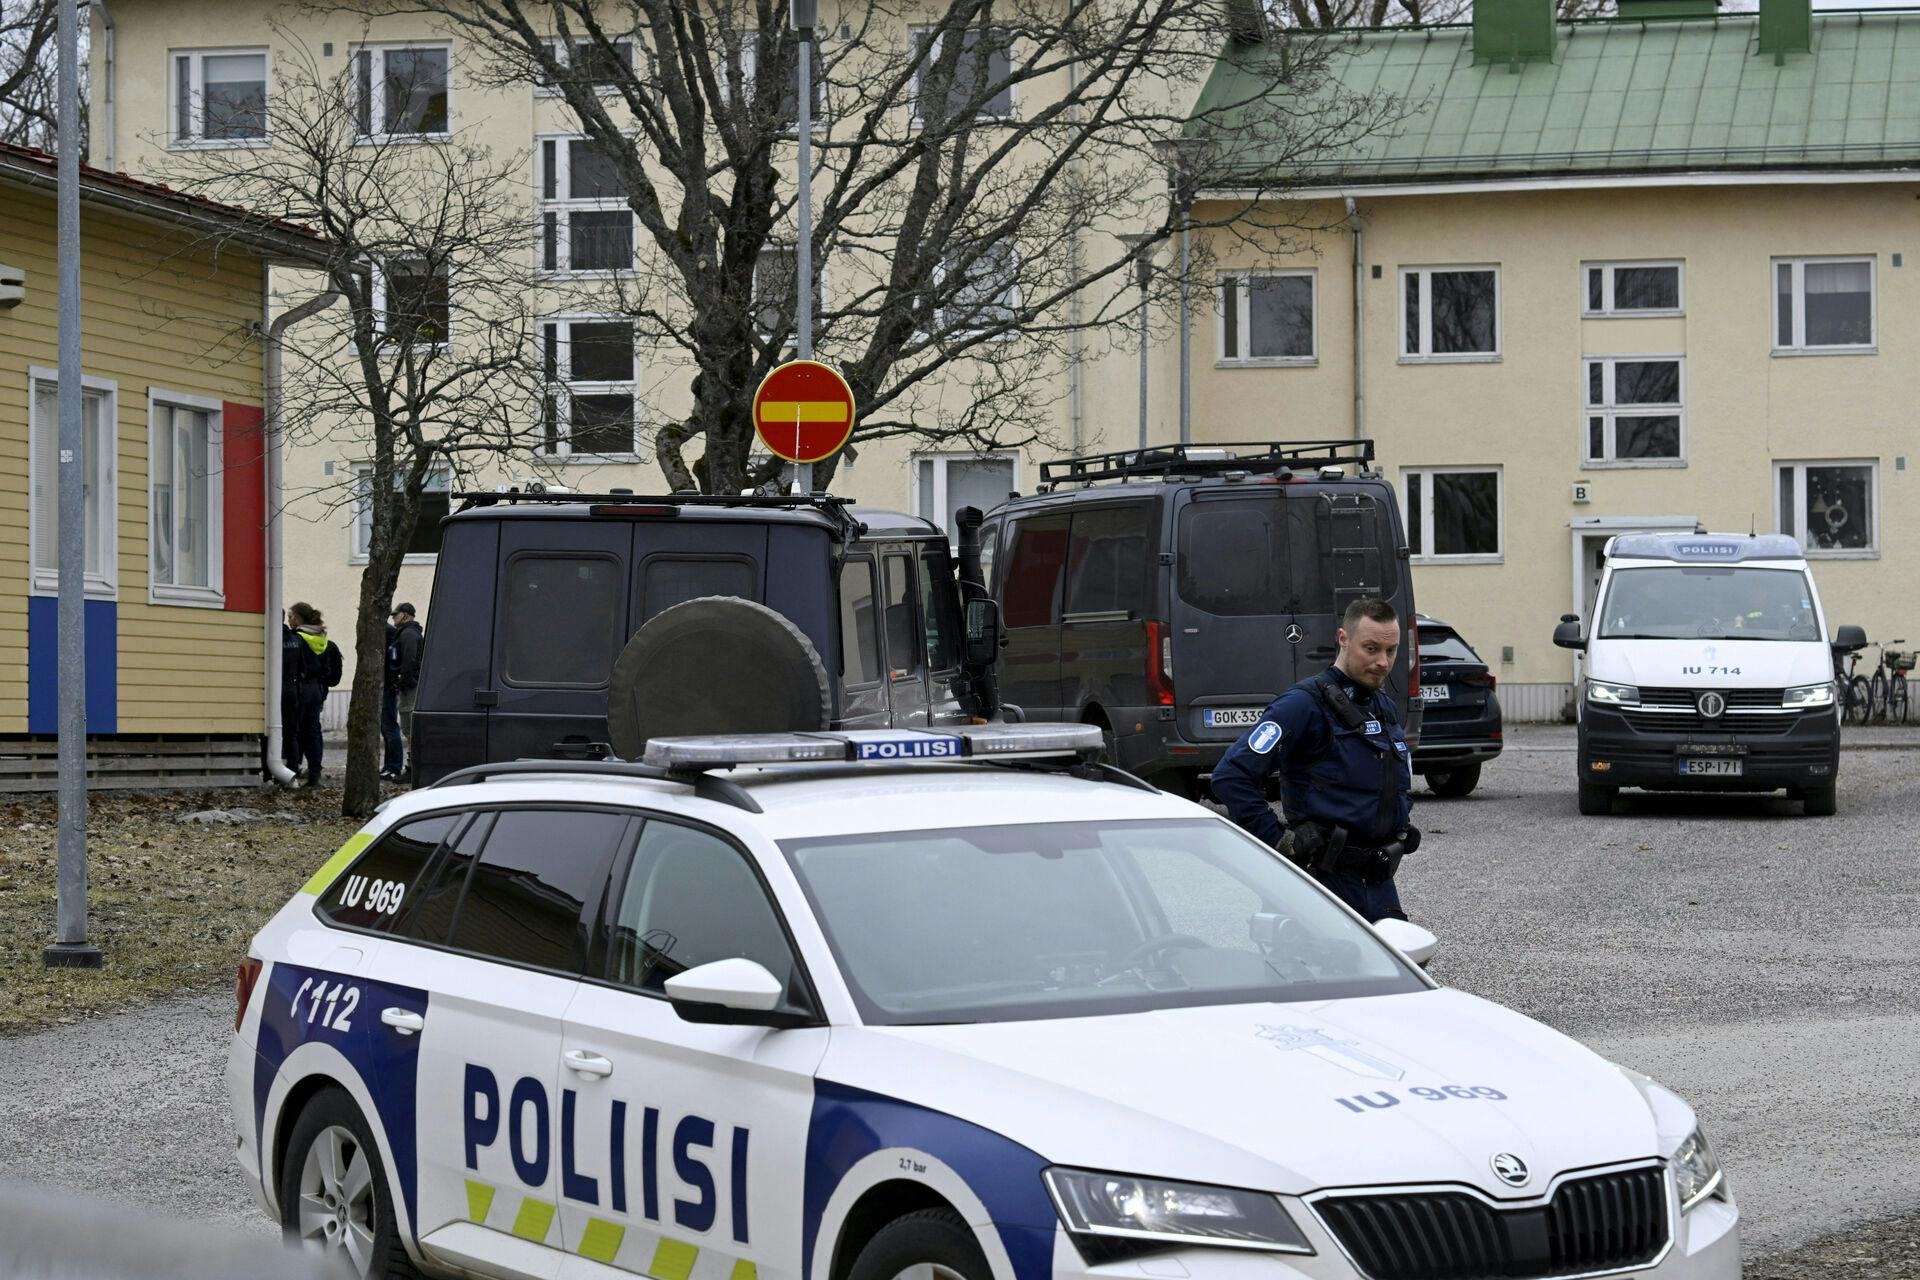 Ifølge det lokale politi fik den mistænkte gerningsperson fat i en pistol fra et nært familiemedlem, inden skyderiet på den finske skole.